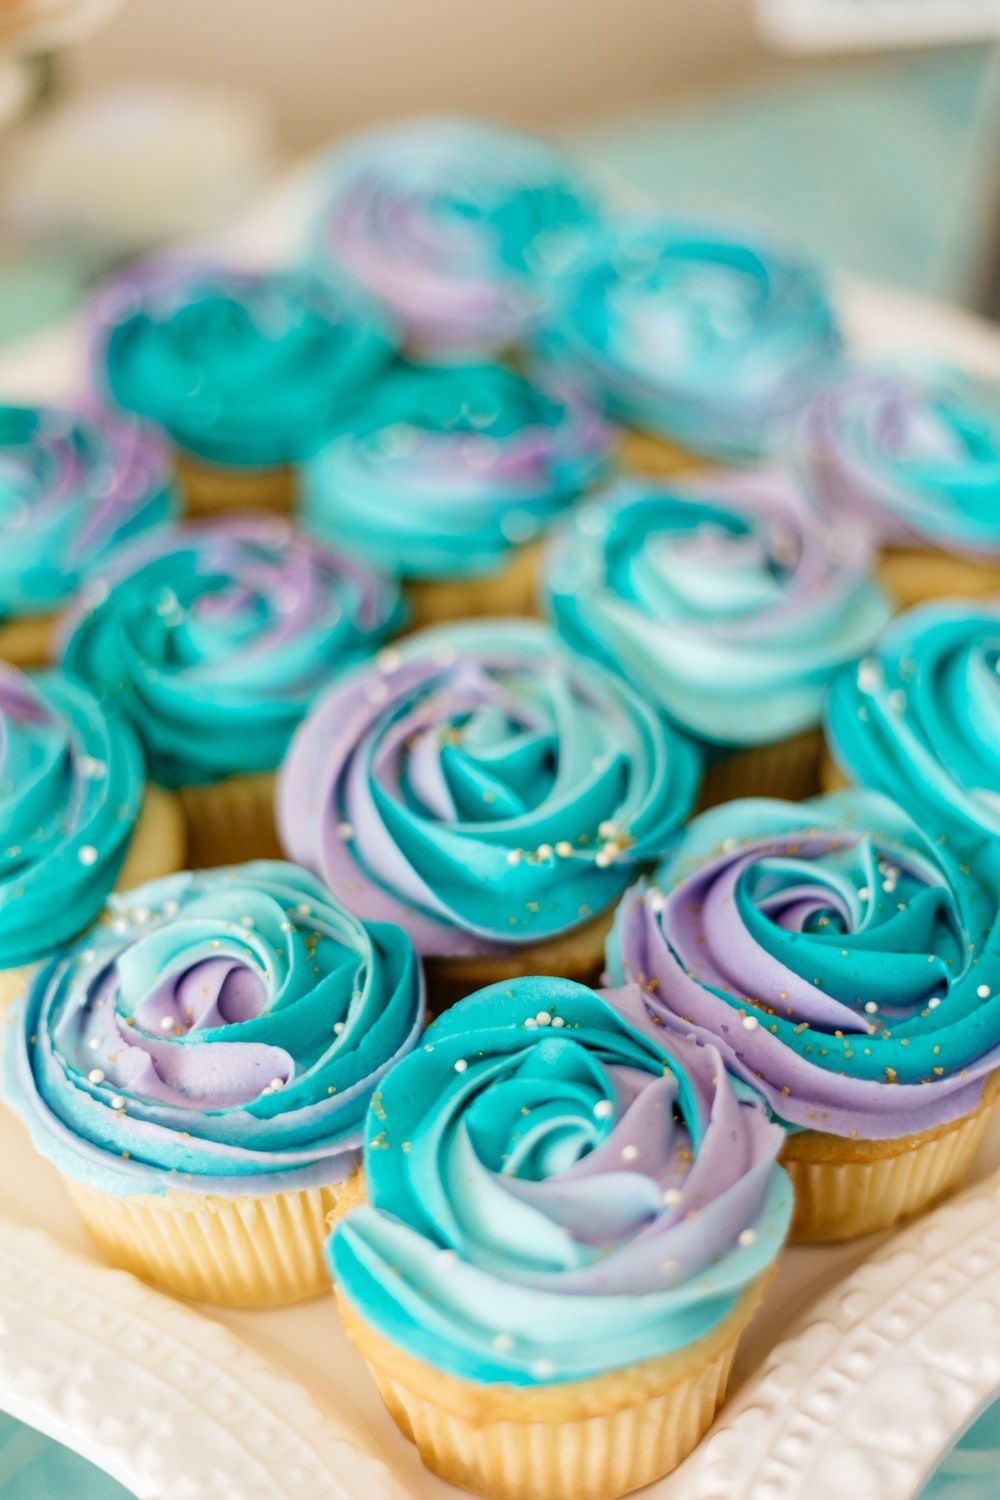 Cupcakes Imágenes | Descargar imágenes gratis